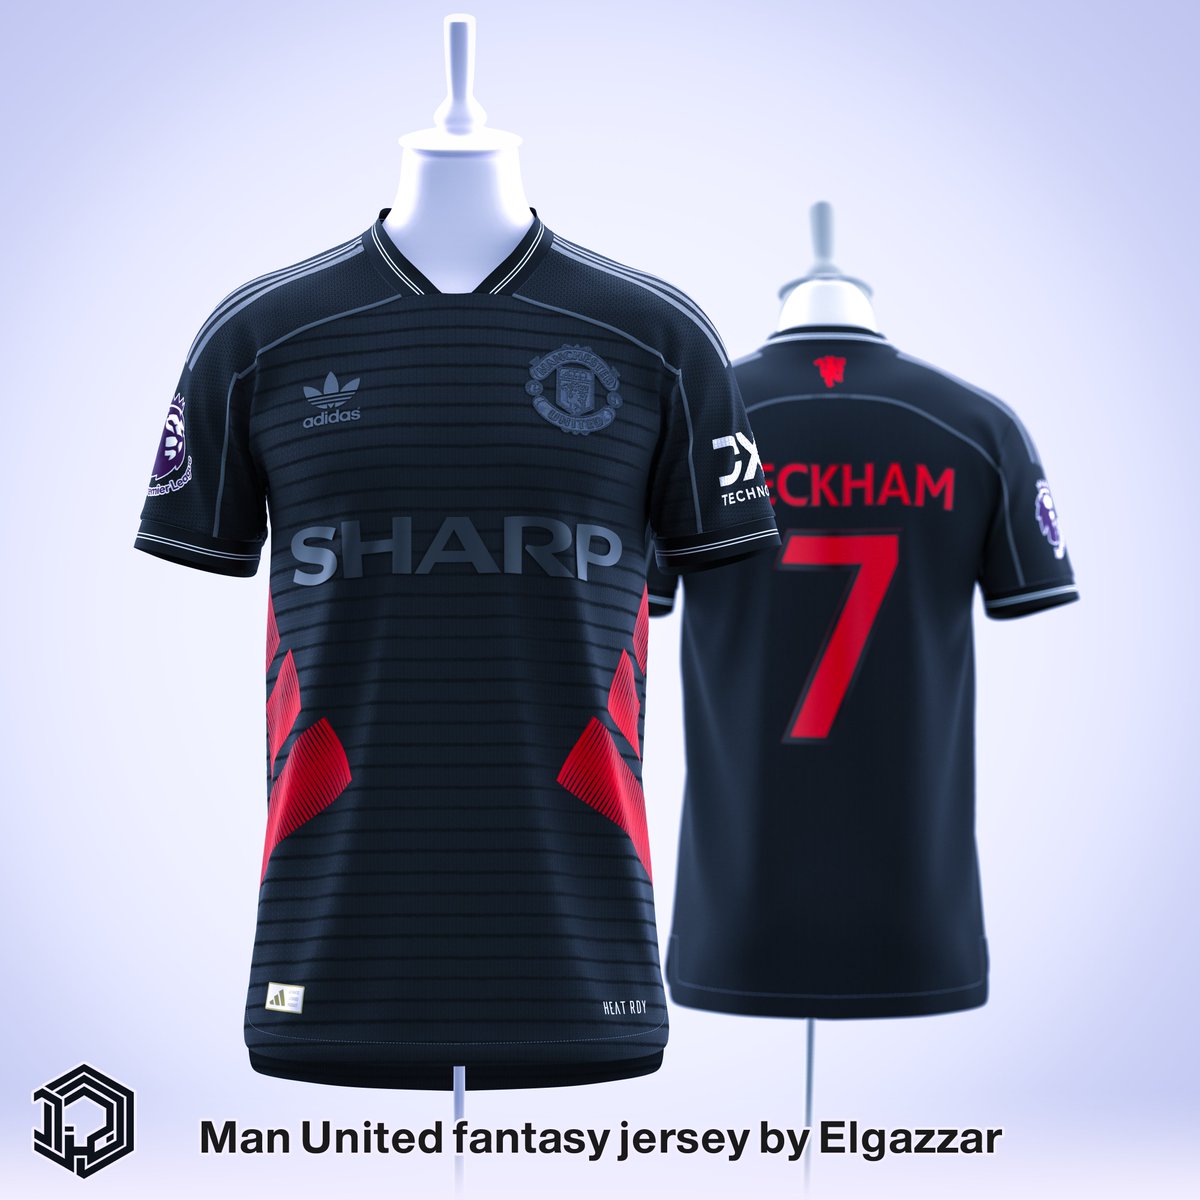 Manchester United
fantasy jersey
@CLO3D @ManUtd_AR @adidas @adidasoriginals @adidasfootball @RedDevils_TR